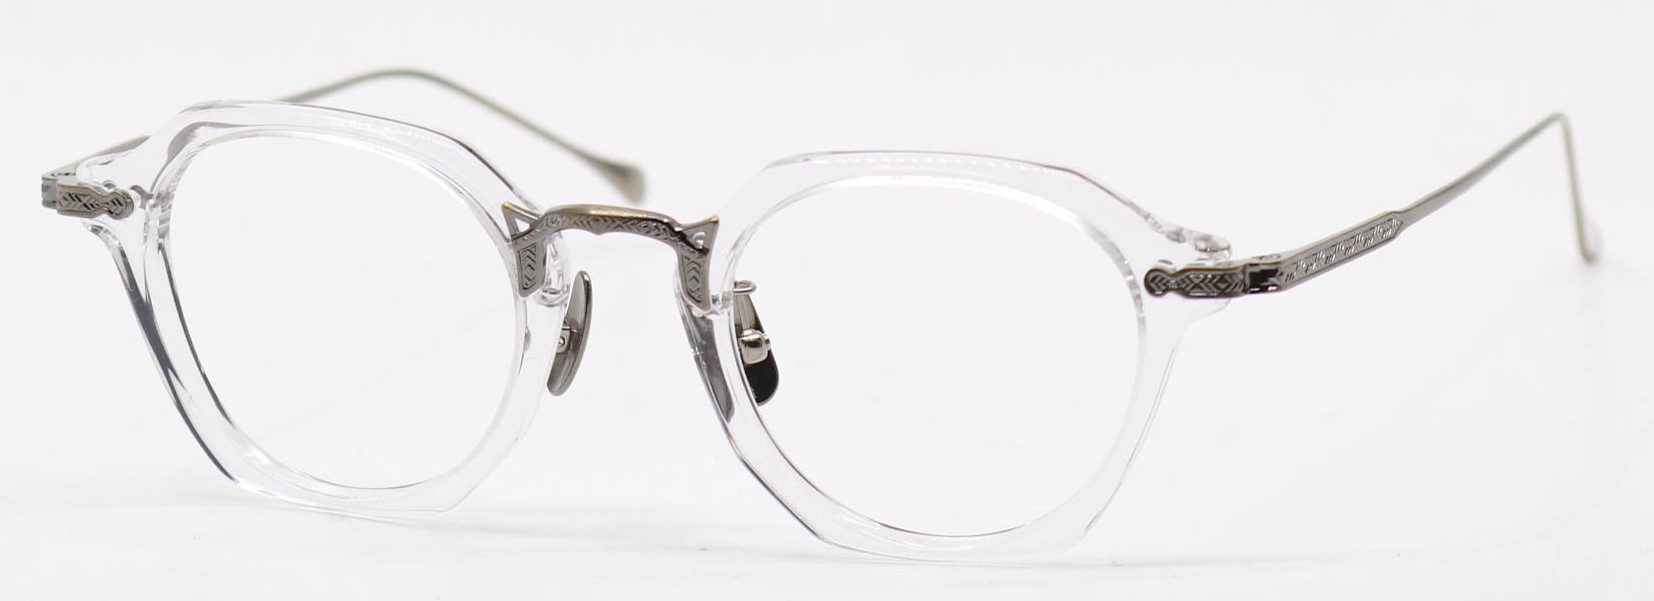 眼鏡のカラータイプC-2 Clear/At-Gold